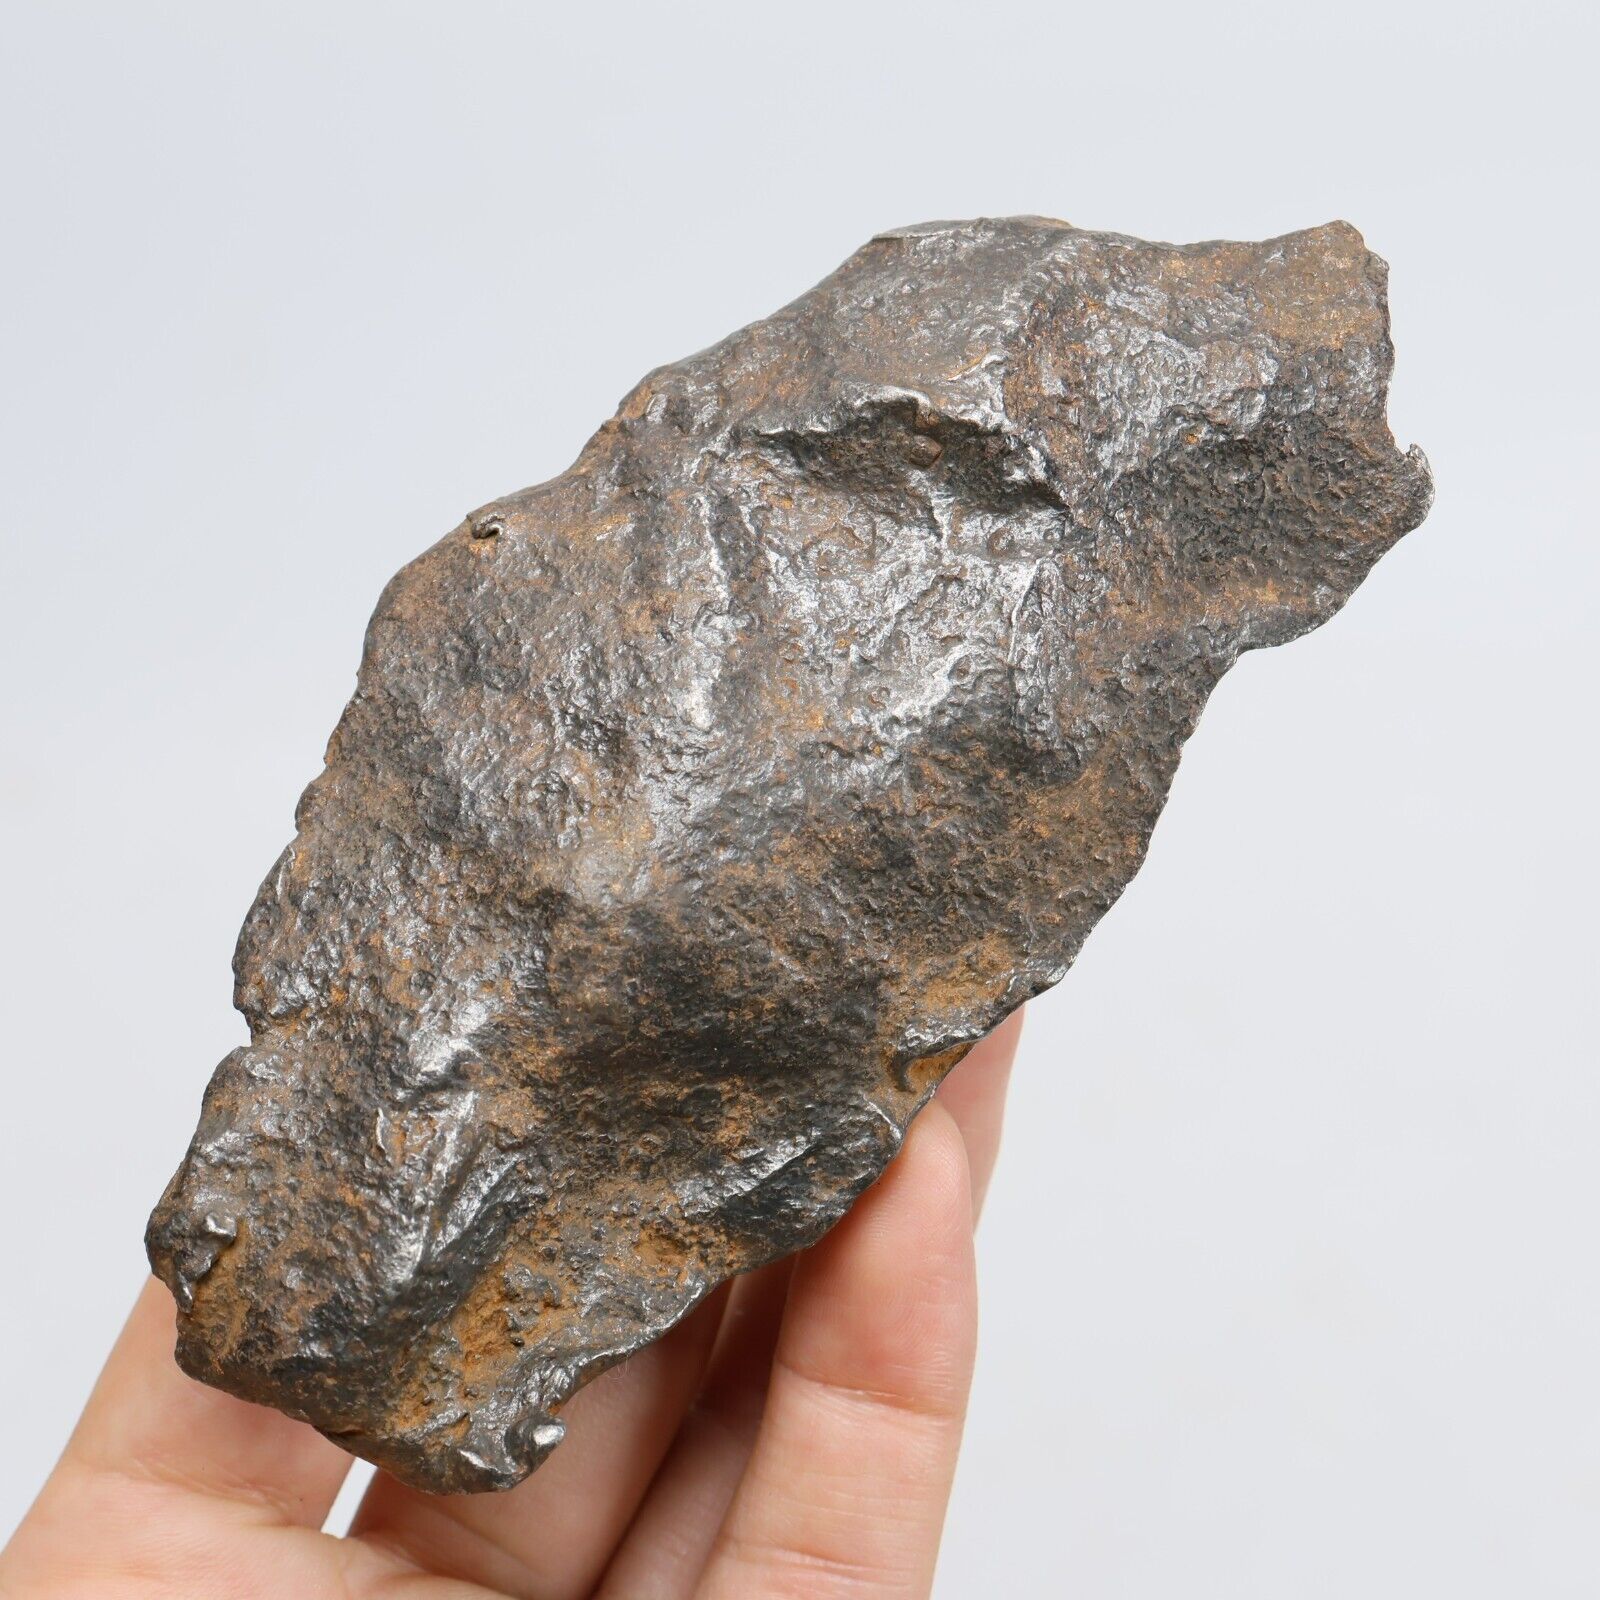 359g Gebel Kamil iron meteorite, Egypt, Space Gift, meteorite, specimen R1343